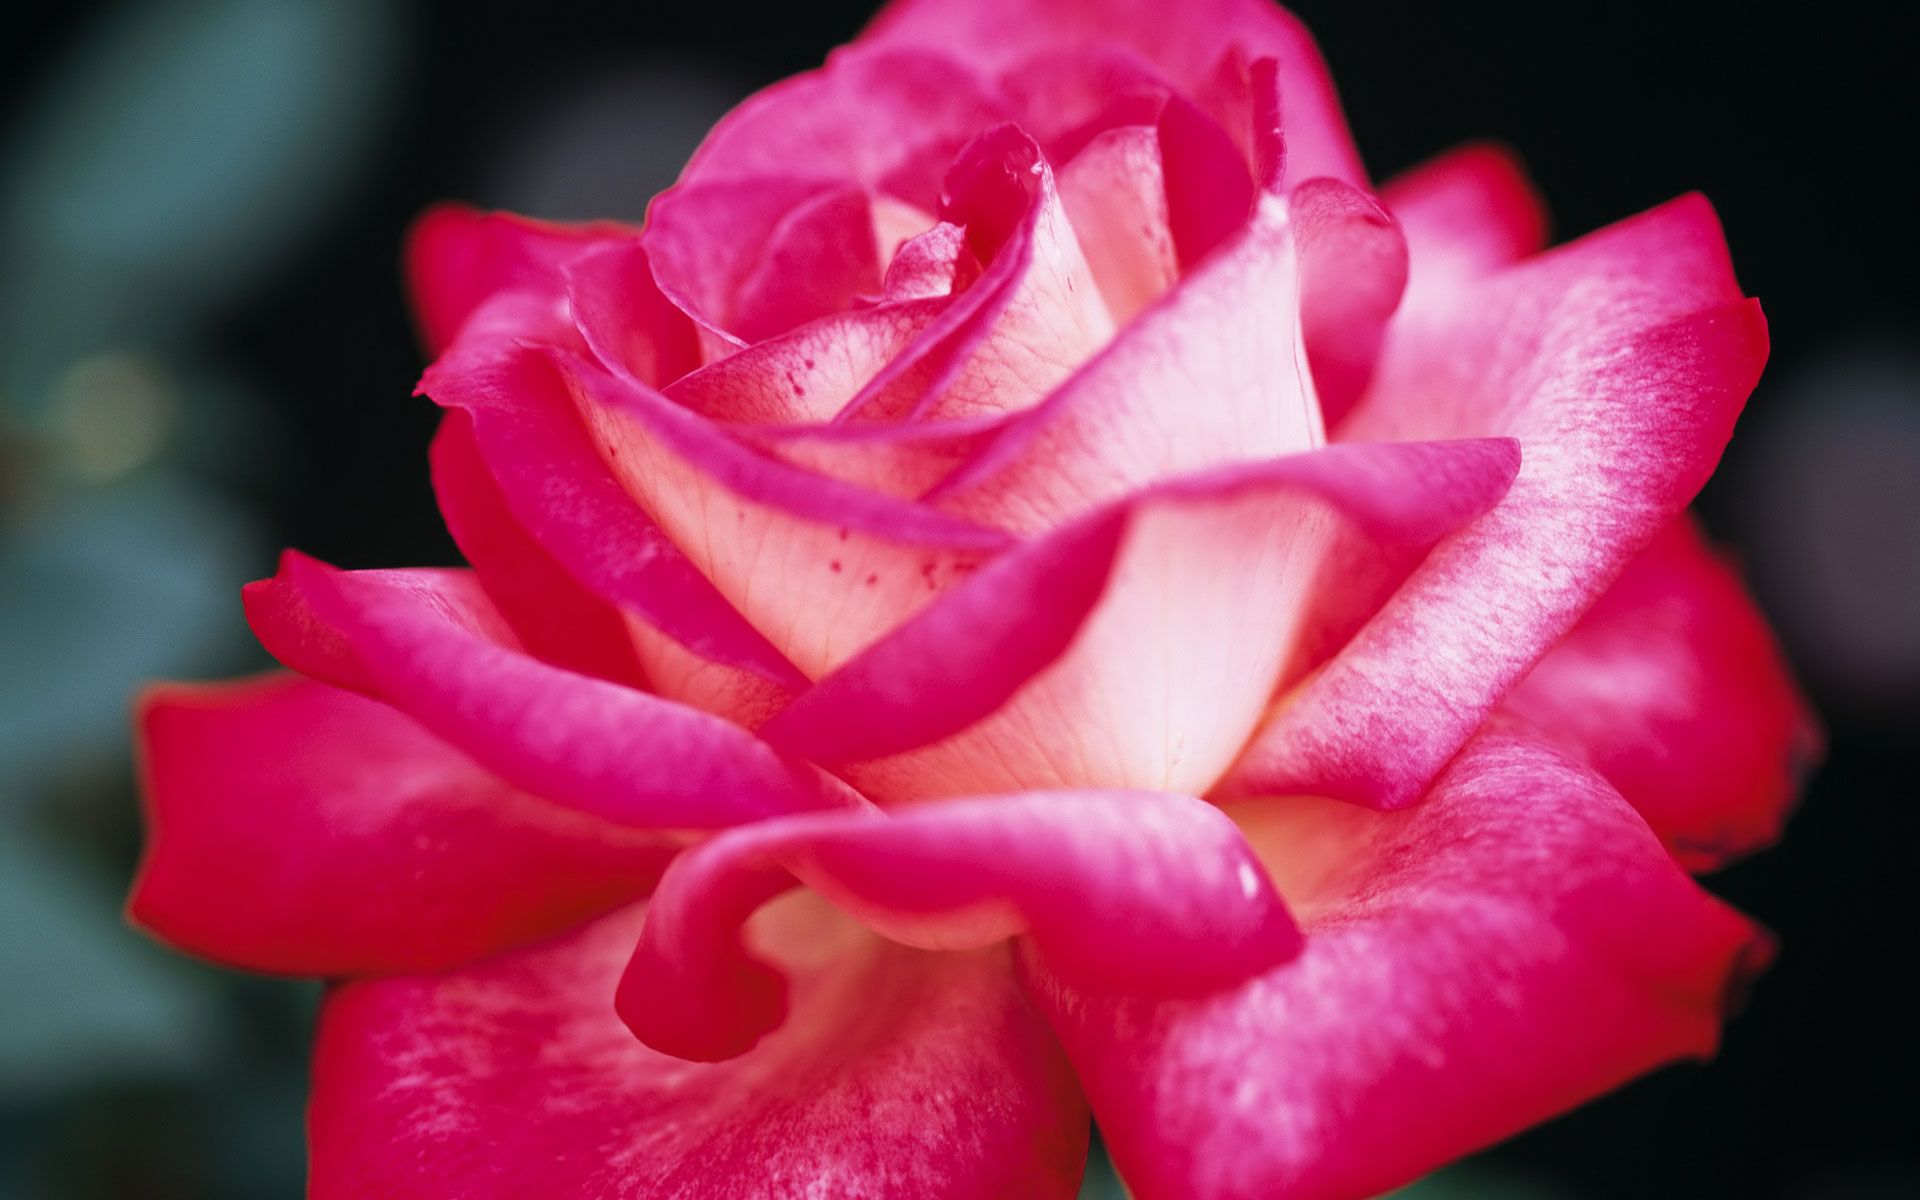 Pretty Pink Roses - Roses Wallpaper 34610935 - Fanpop